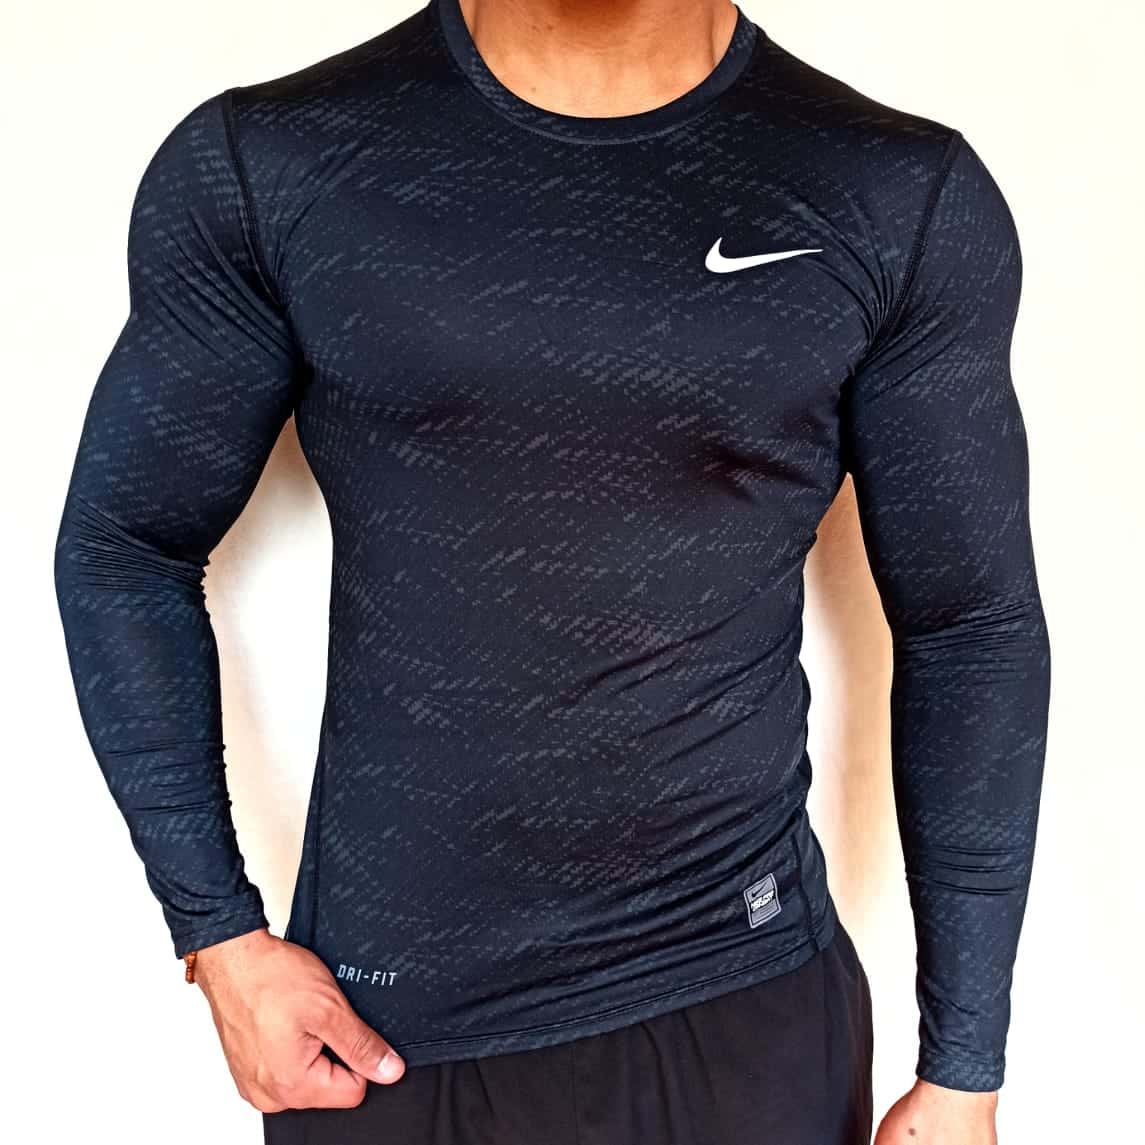 Rejse Tidsserier mudder Shirt Nike Pro Compression Long Sleeve -Engraved – Abdalla Store